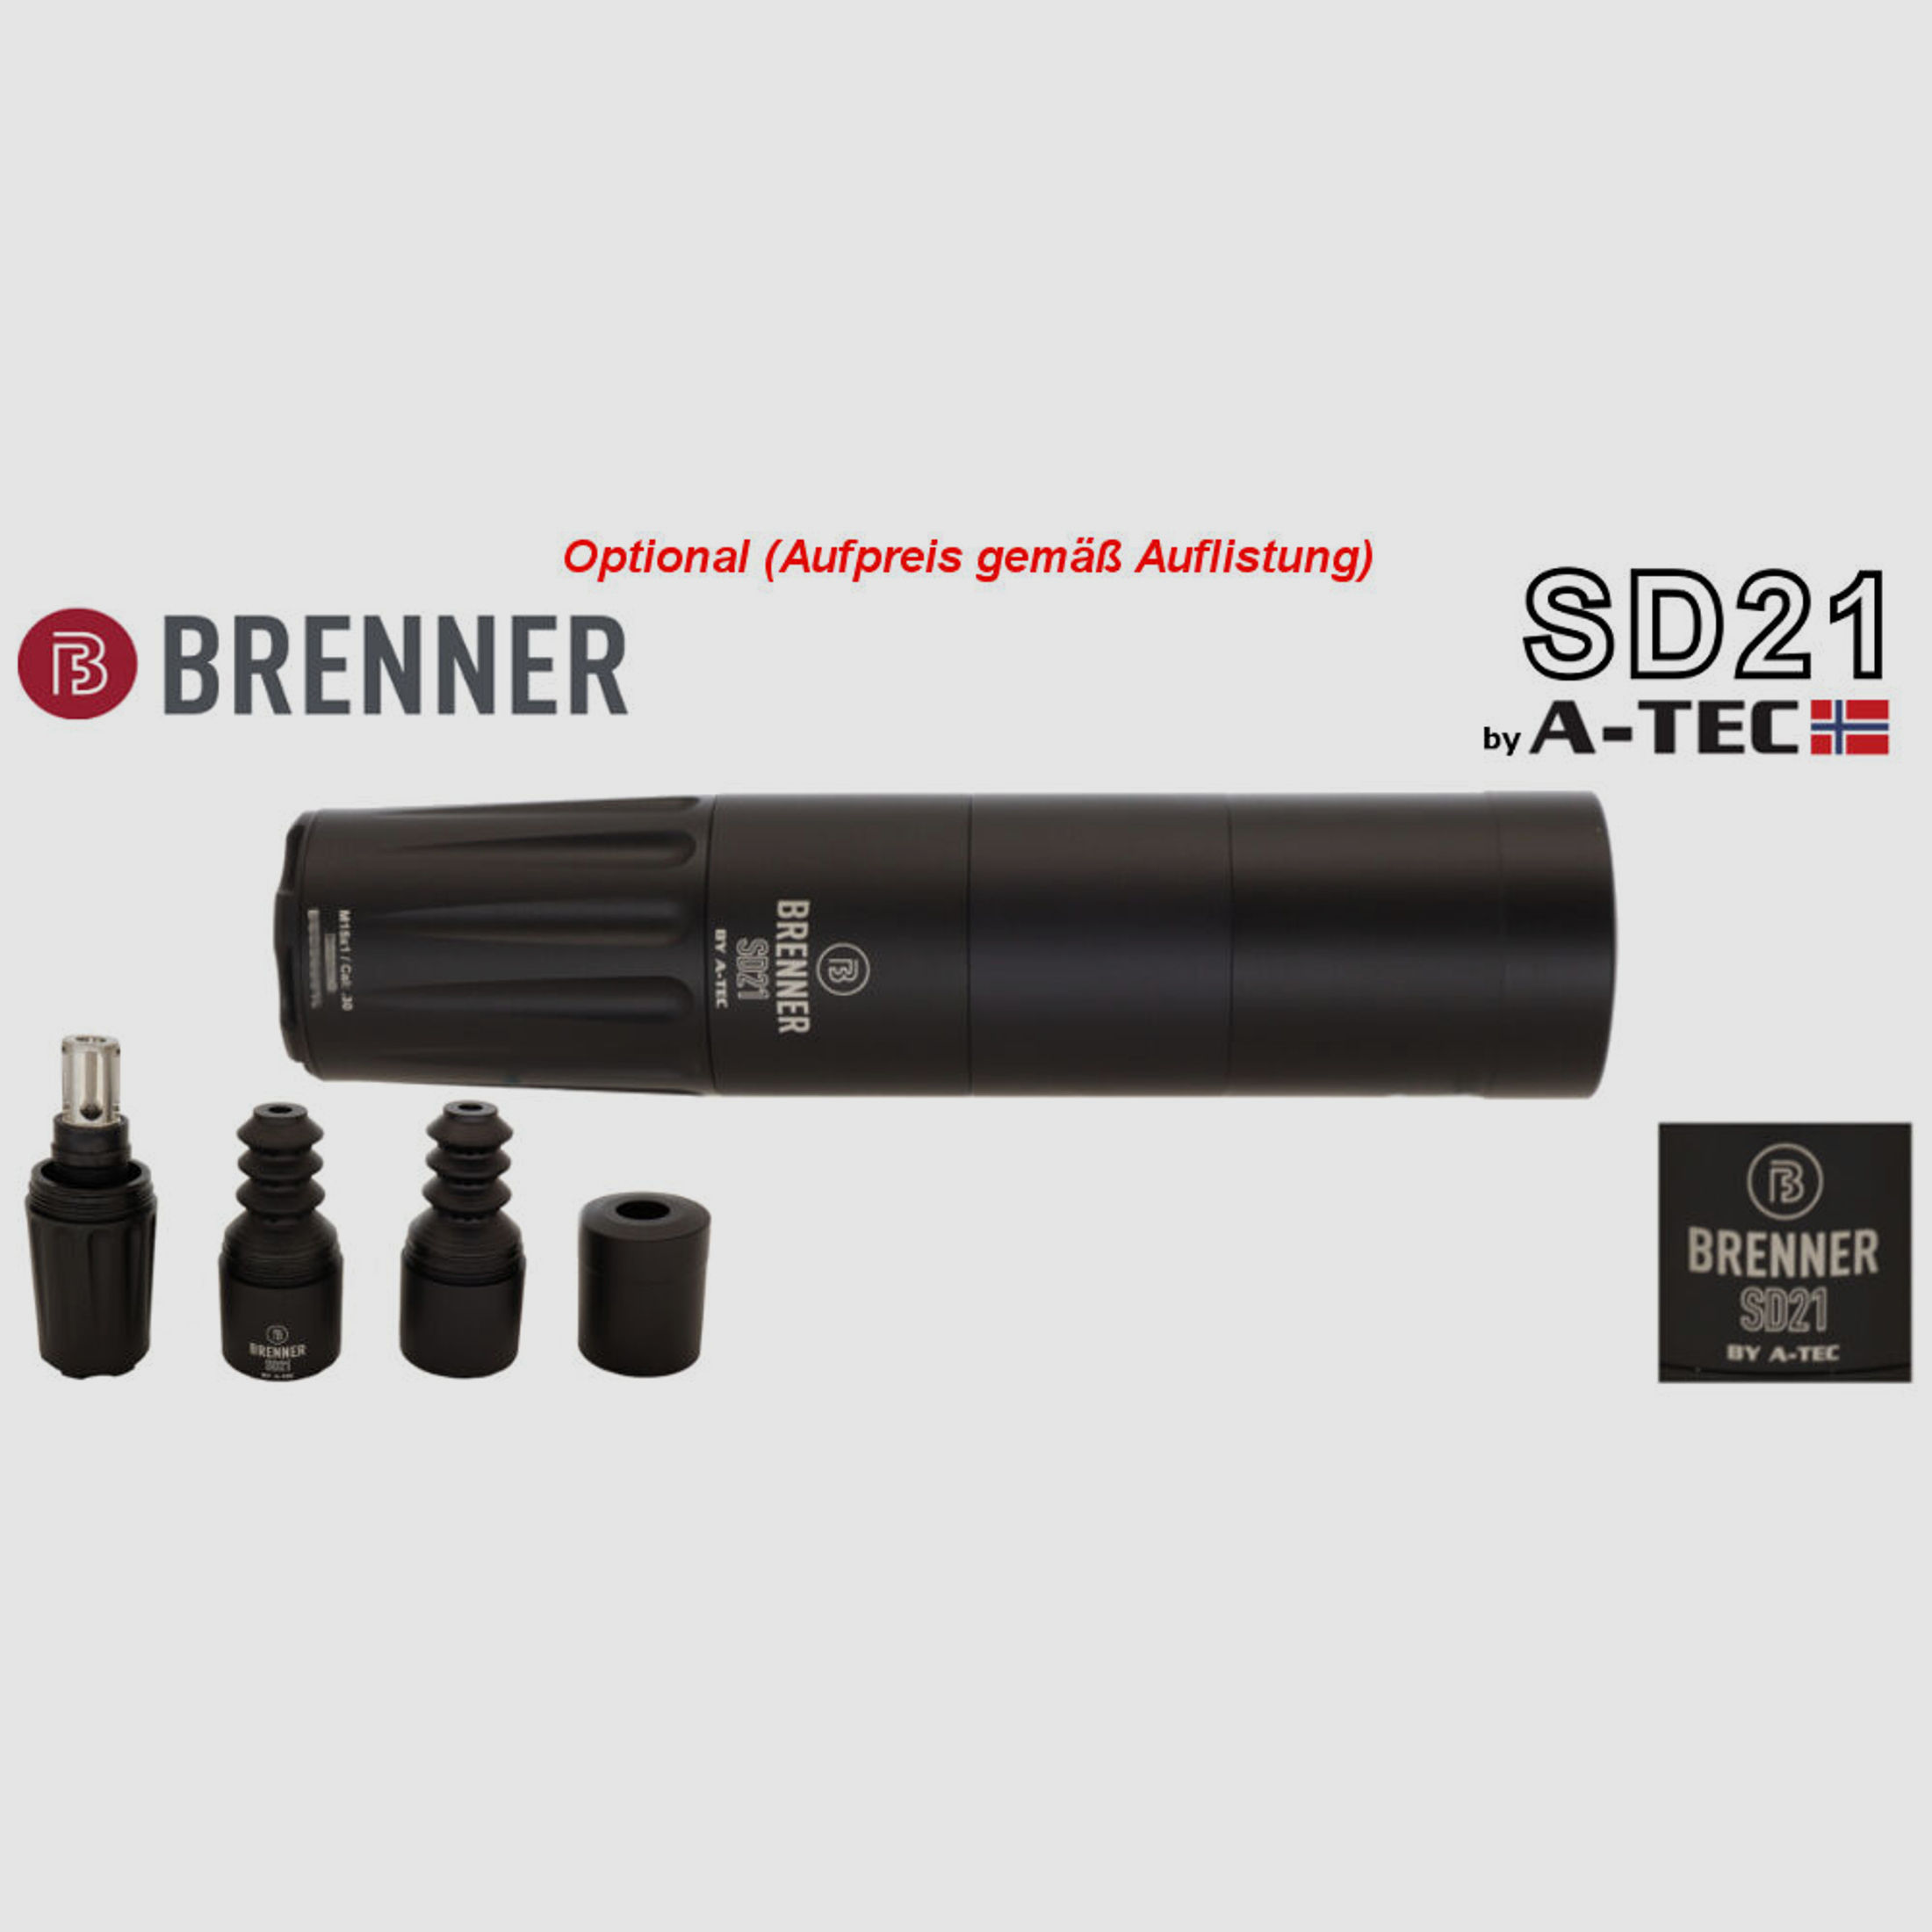 Bergara	 B14 B&H Prohunter Flex LINKS Lochschaft Meopta 3-15x50 fertig montiert / Optional: Brenner Schalldämpfer